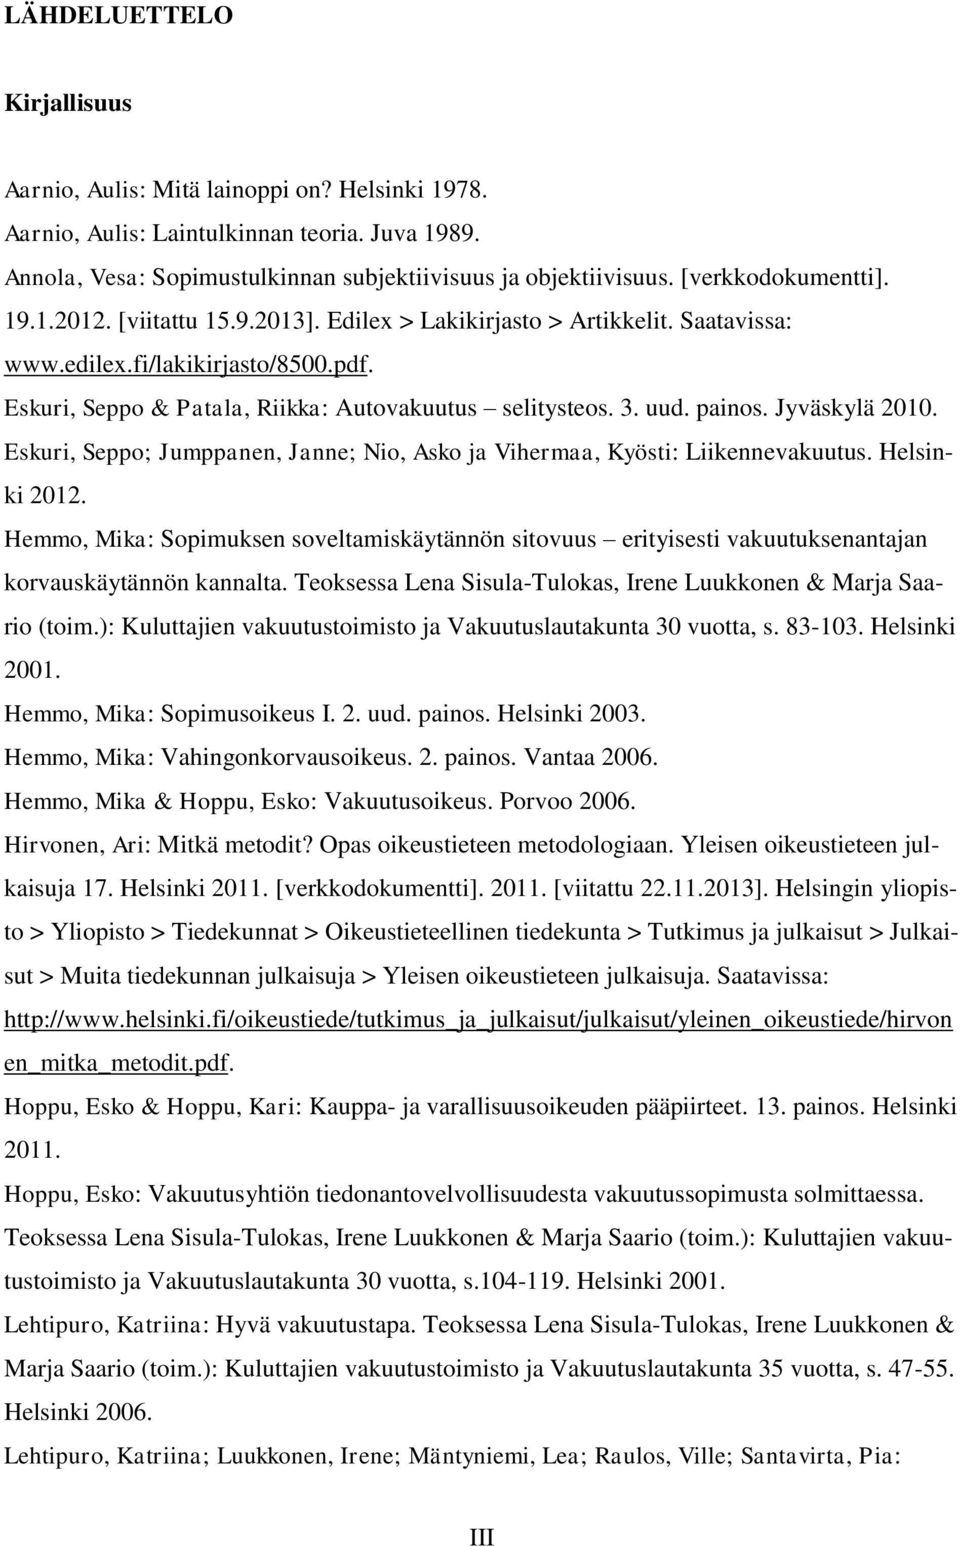 uud. painos. Jyväskylä 2010. Eskuri, Seppo; Jumppanen, Janne; Nio, Asko ja Vihermaa, Kyösti: Liikennevakuutus. Helsinki 2012.